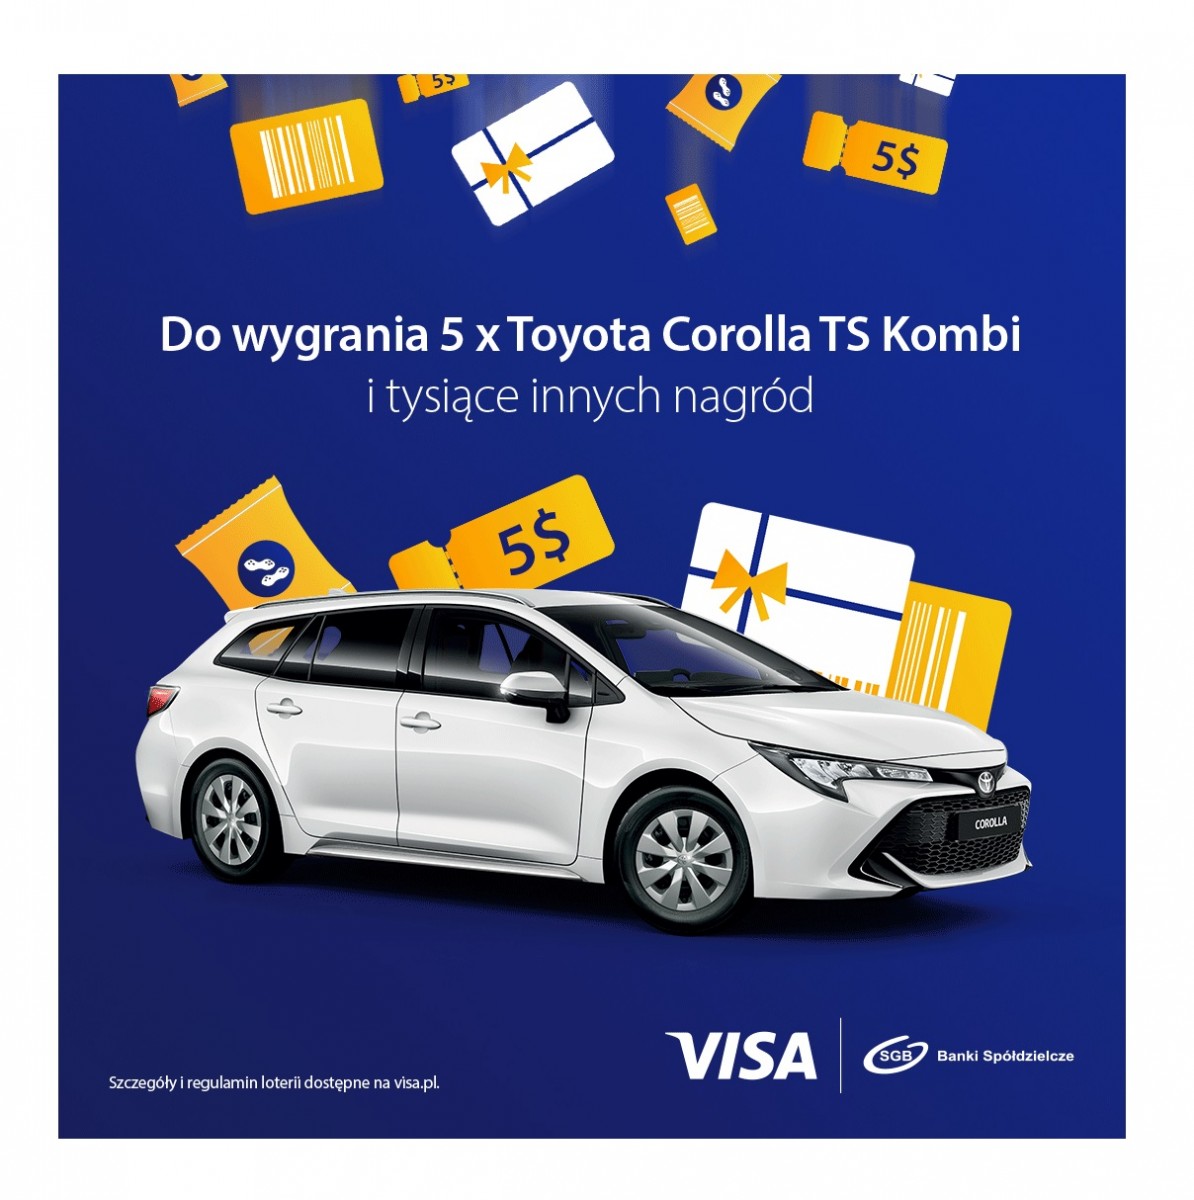 Płać kartą Visa i wygraj Toyotę Bank Spółdzielczy w Lipnie